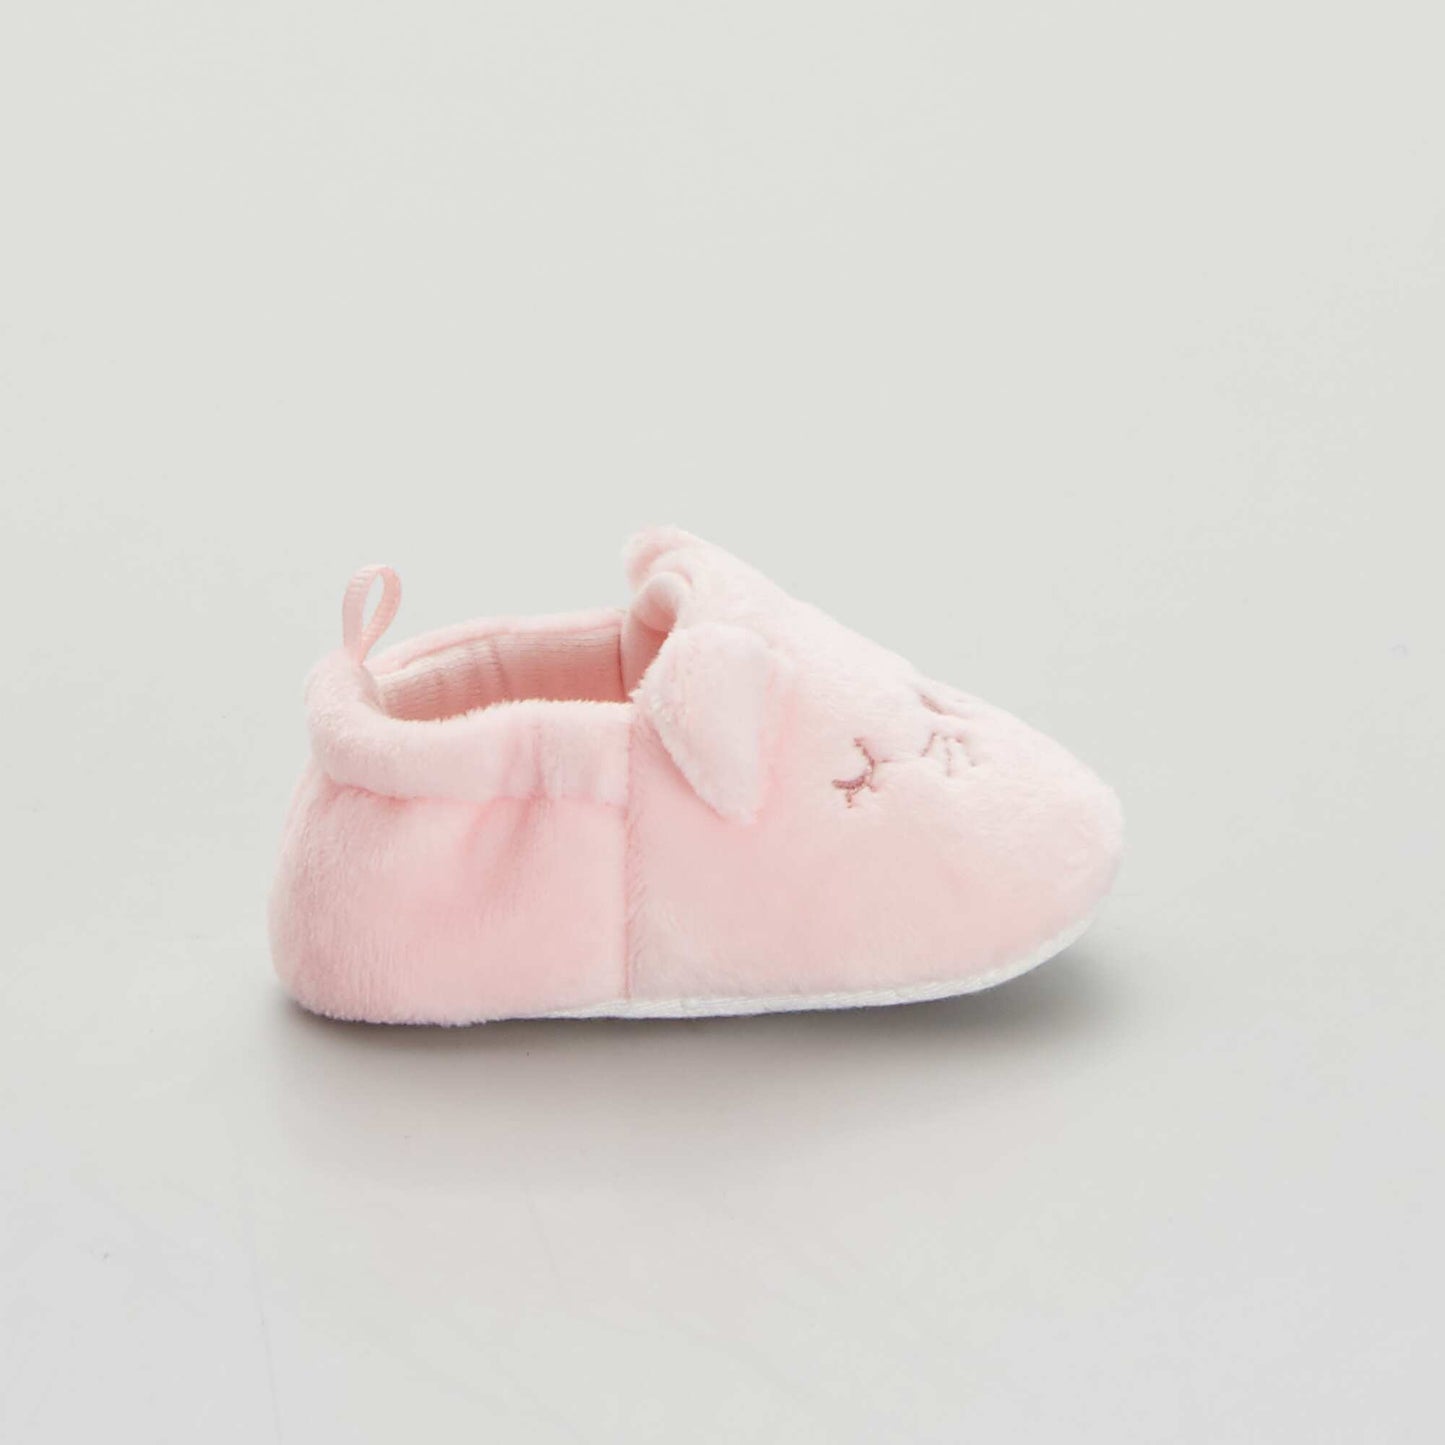 Zapatillas de terciopelo para bebé rosa pálido